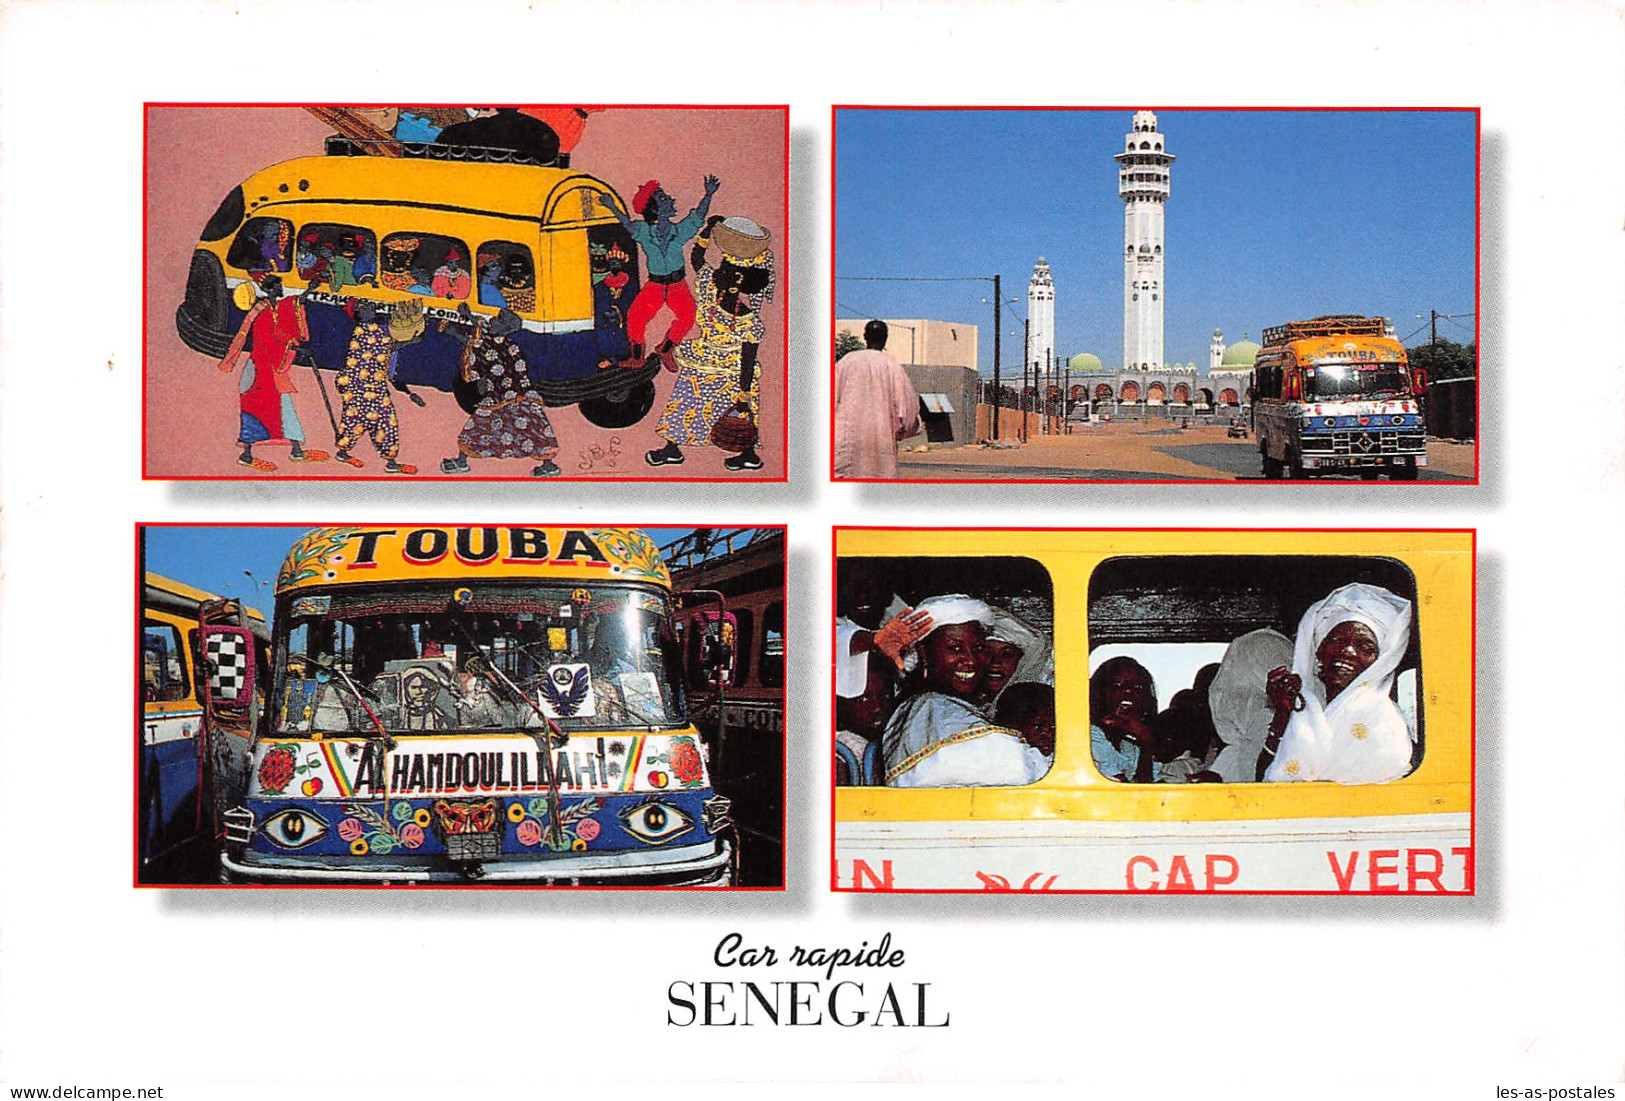 SENEGAL CAR RAPIDE - Senegal